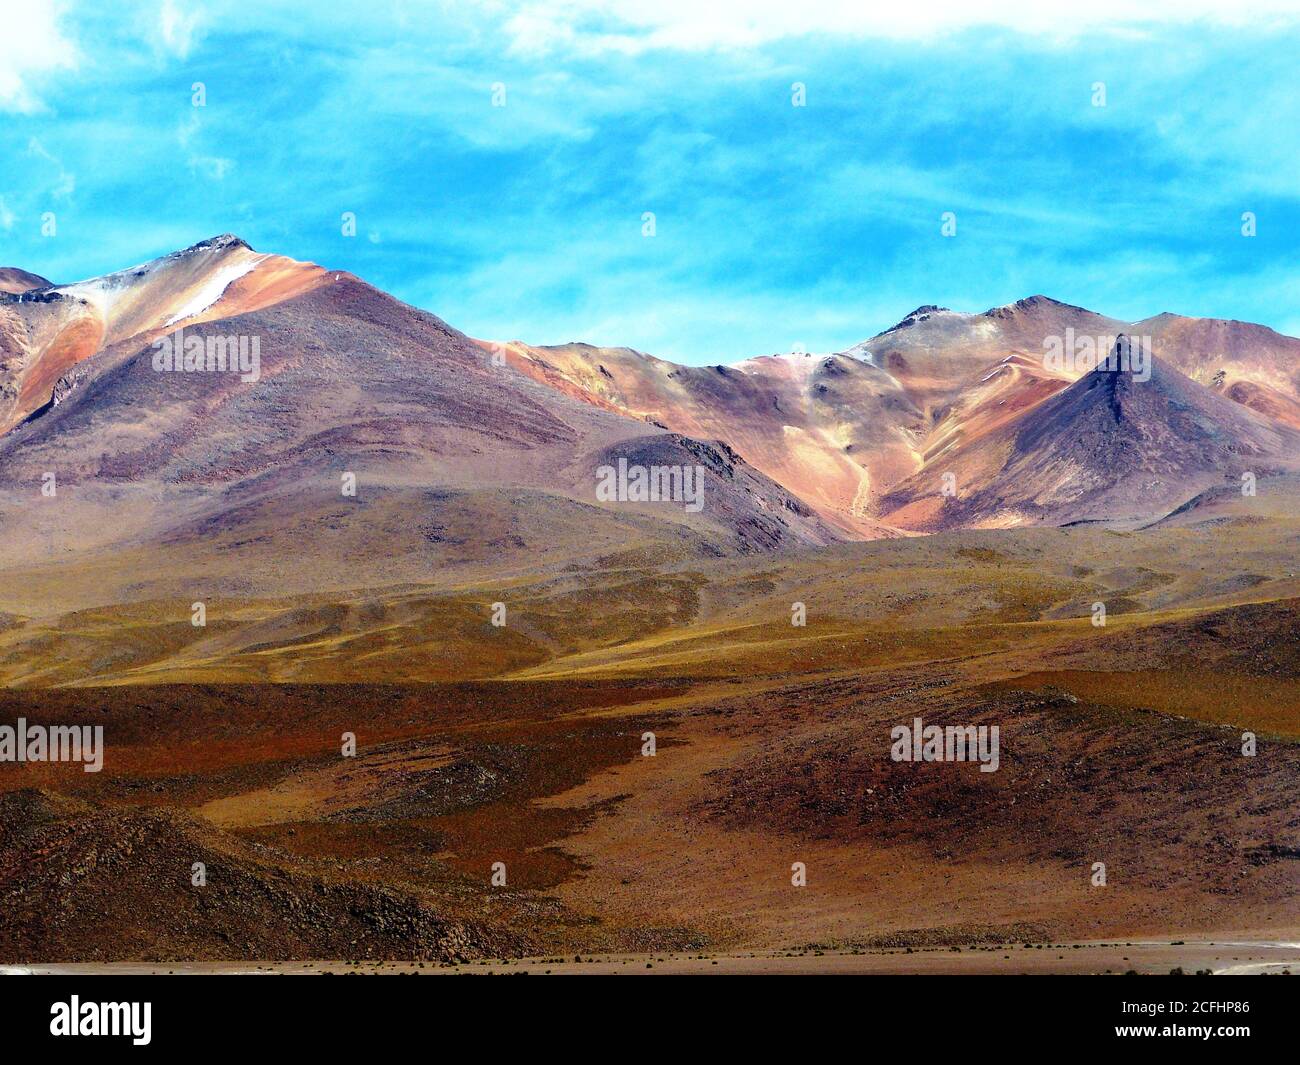 Salvador Dali Desert Dali Valley est une vallée de paysages extrêmement stérile de Potosi, en Bolivie, et se caractérise par des paysages surréalistes. Couleur vive m Banque D'Images